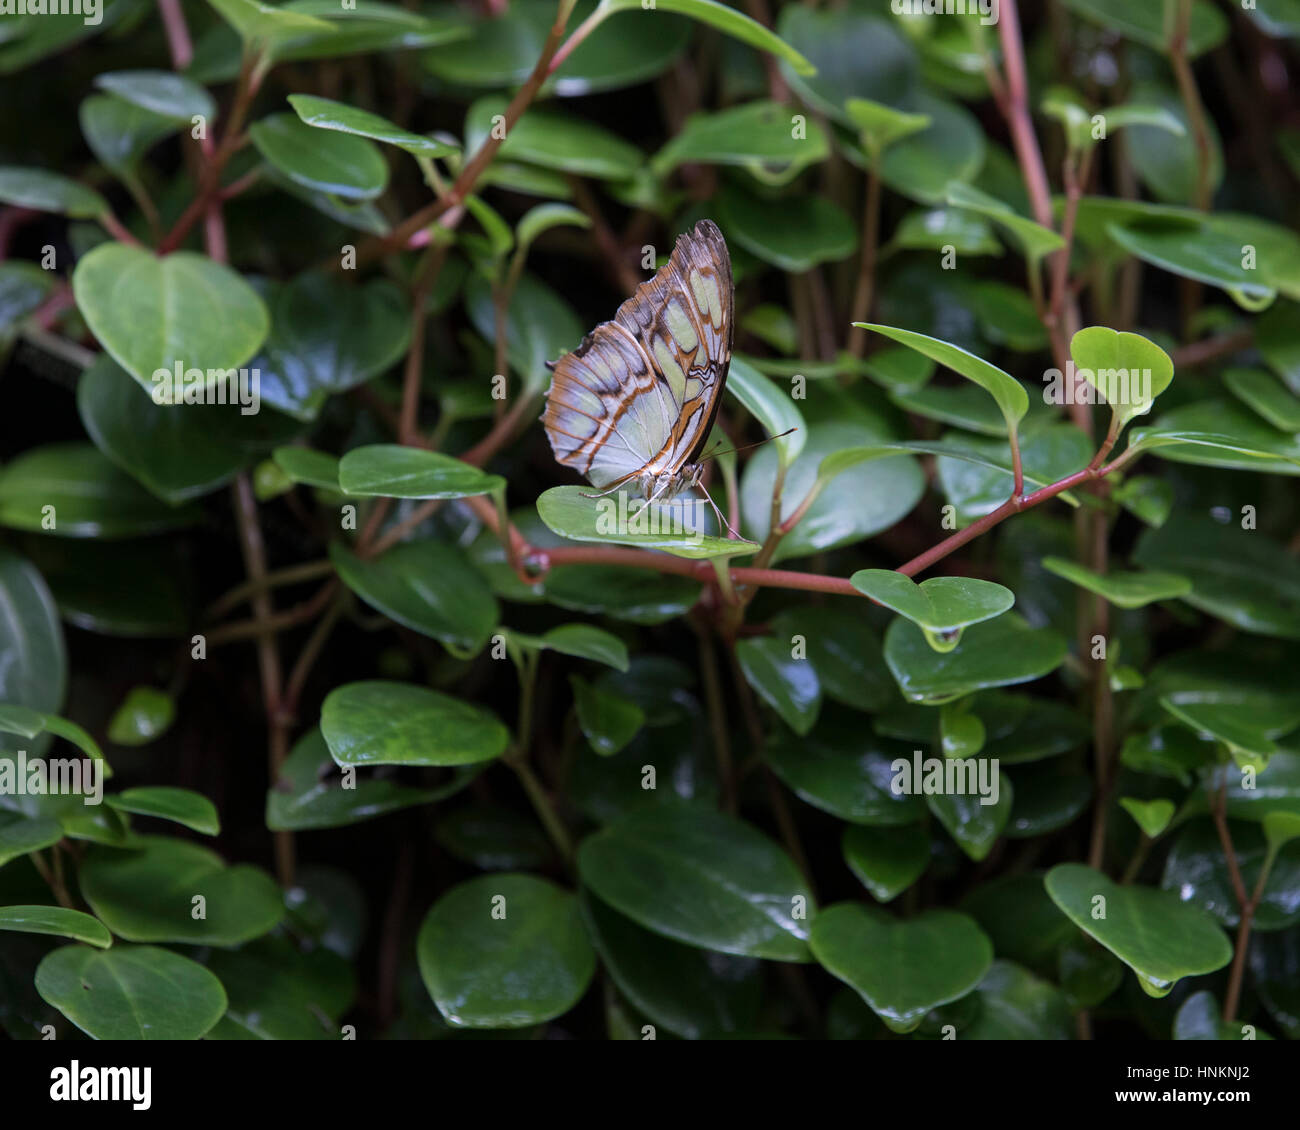 Malachite butterfly on foliage Stock Photo